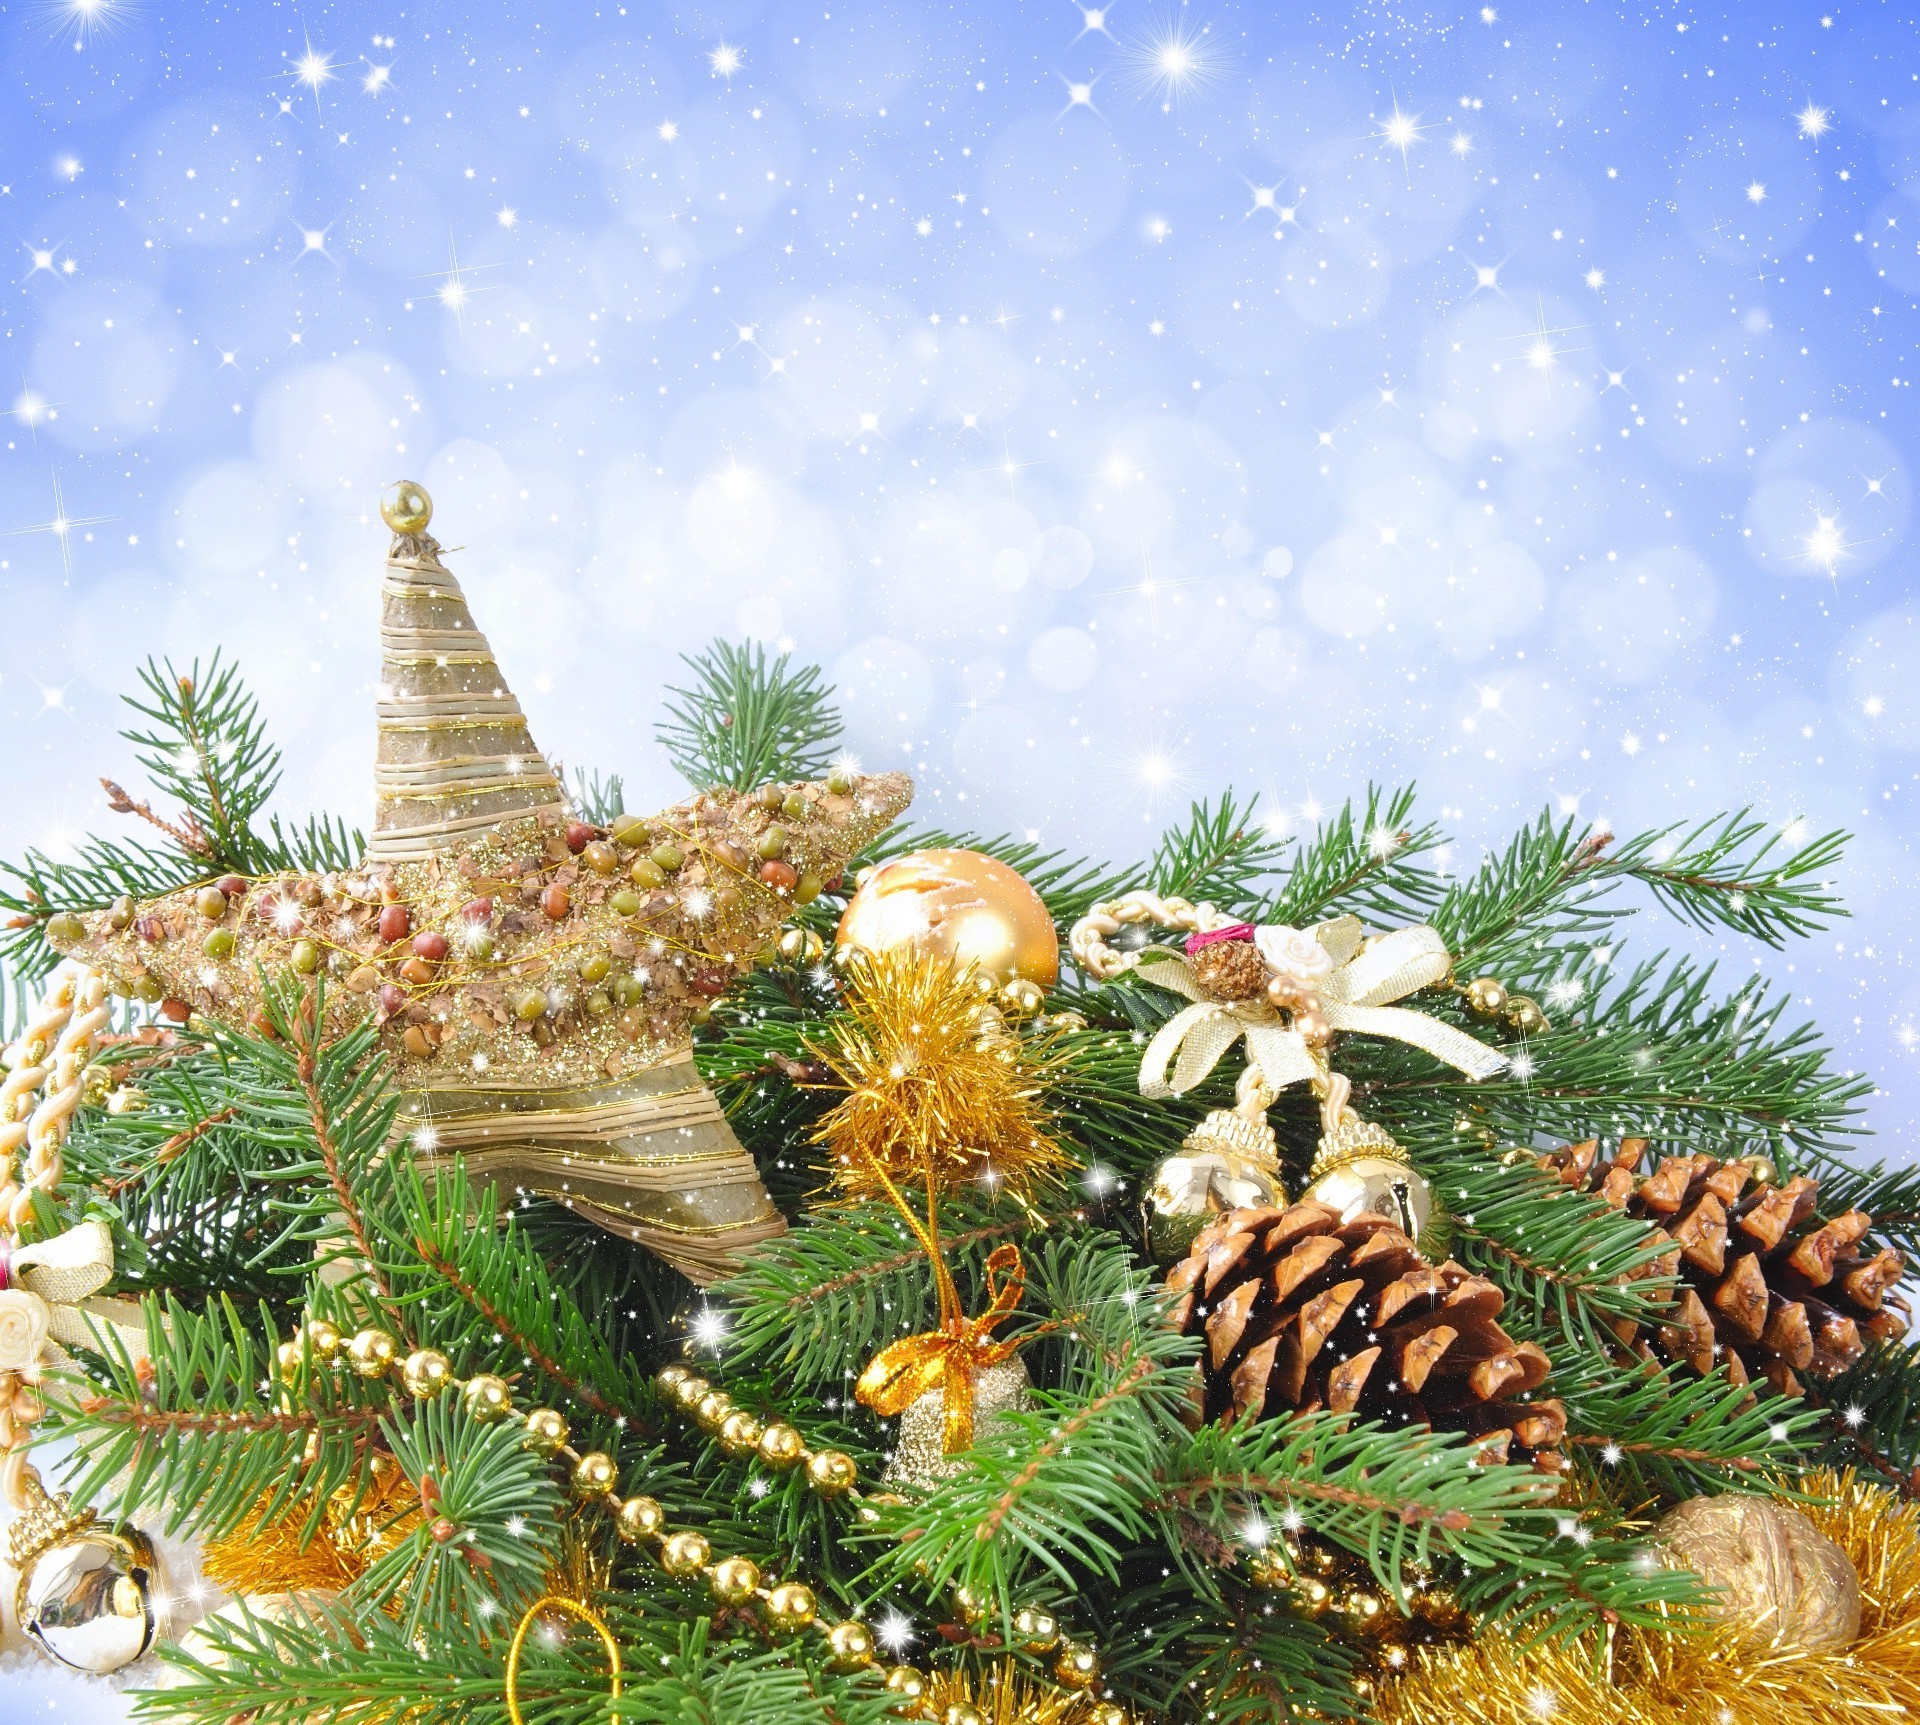 новый год рождество дерево украшения пихта зима праздник сосна золото отпуск сезон конусная ели цвет рабочего стола мерри природа мяч ева филиал